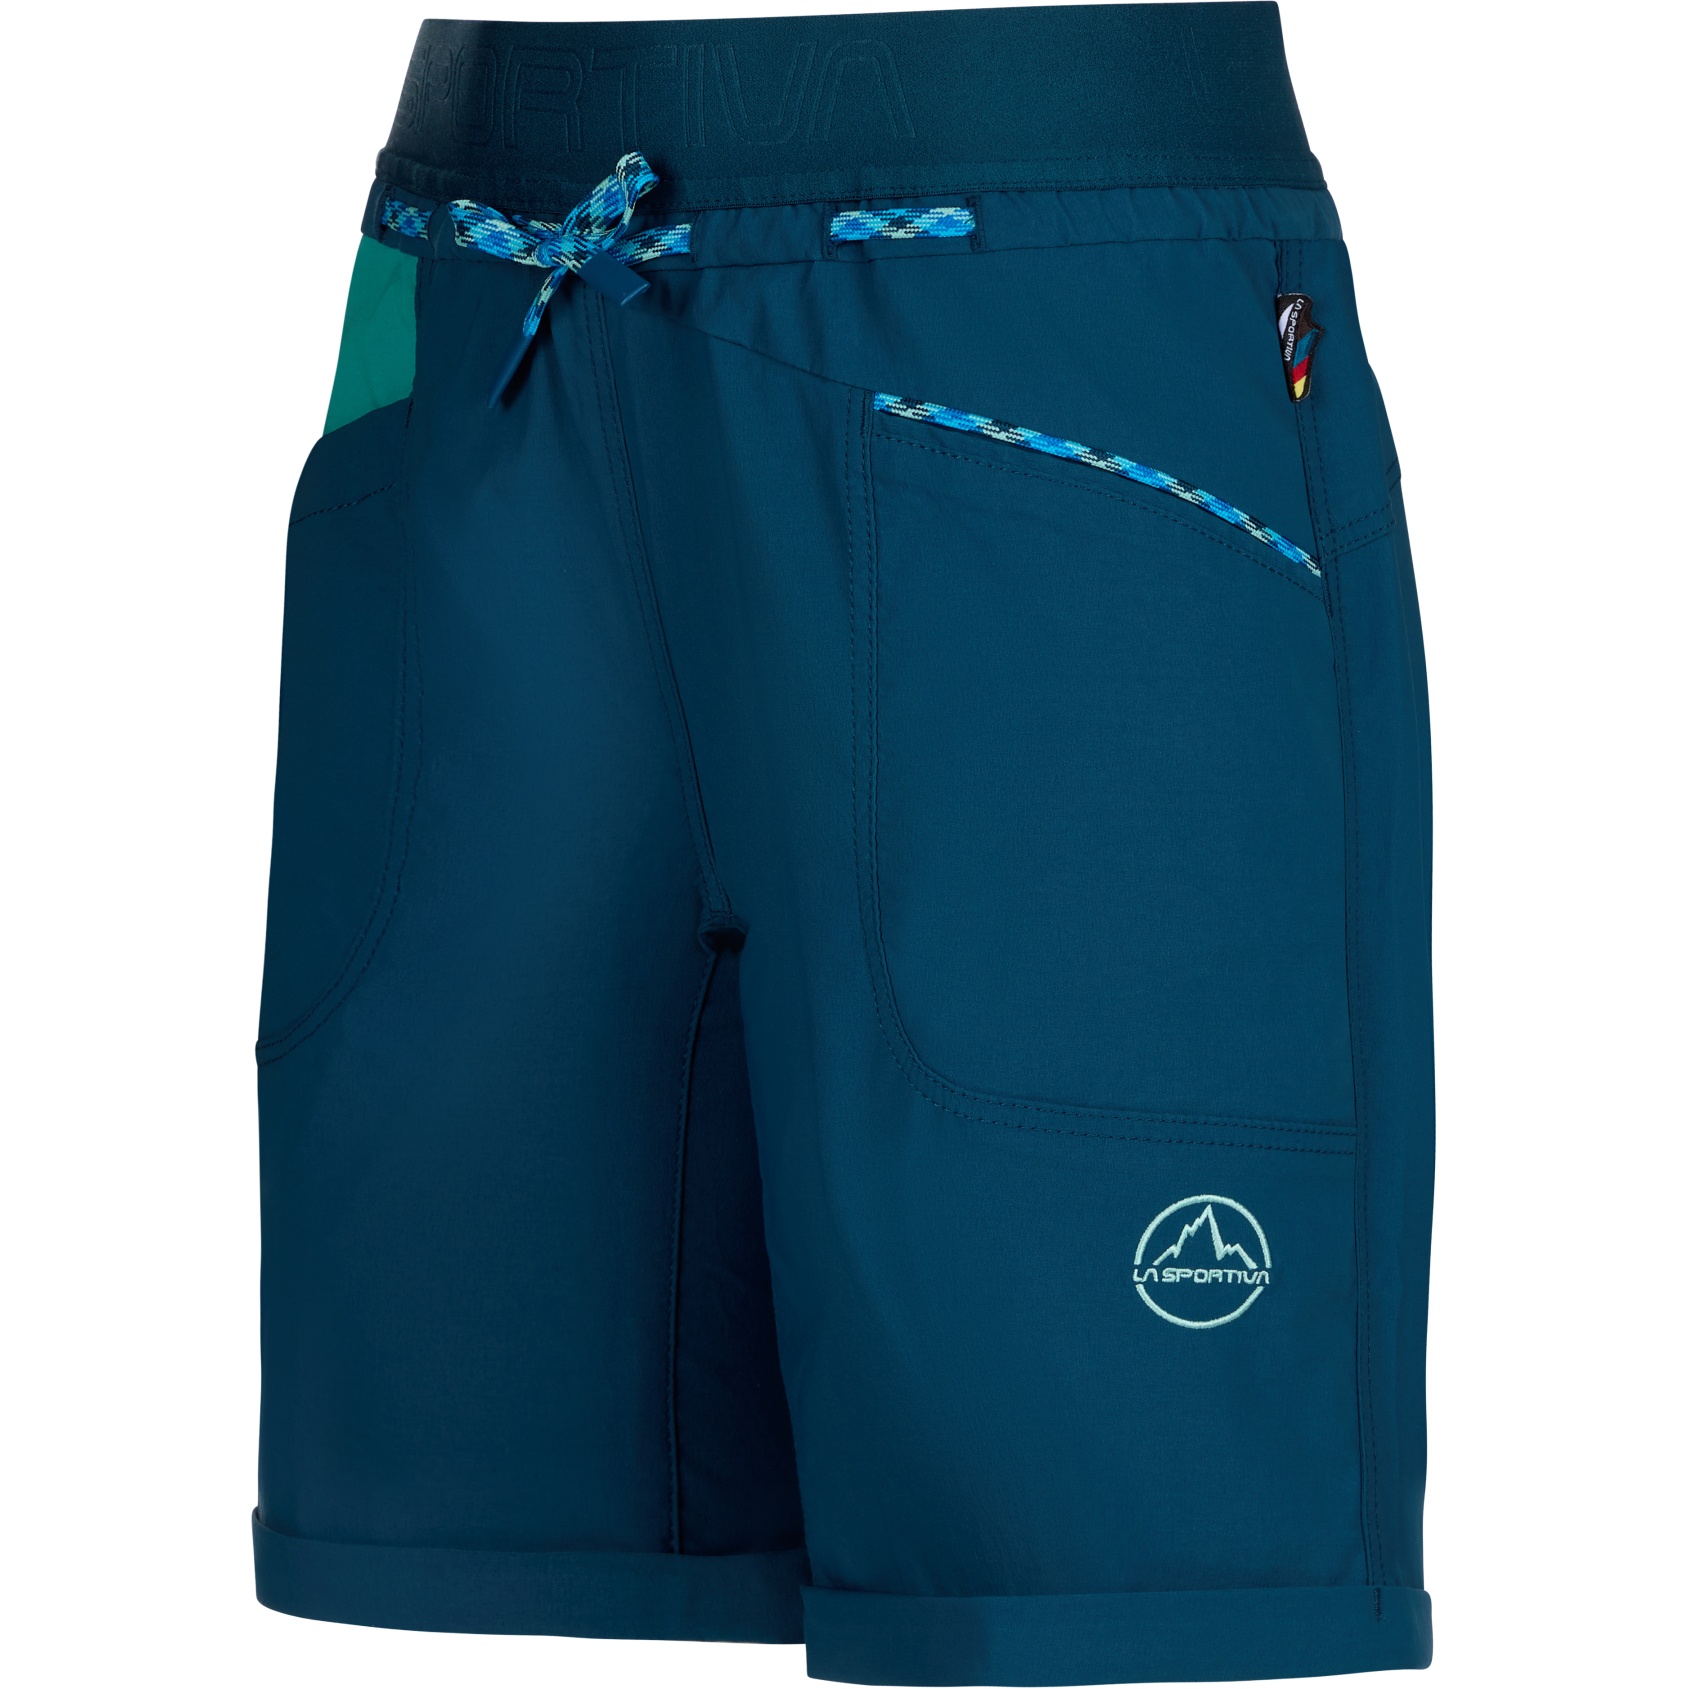 Produktbild von La Sportiva Mantra Shorts Damen - Storm Blue/Lagoon